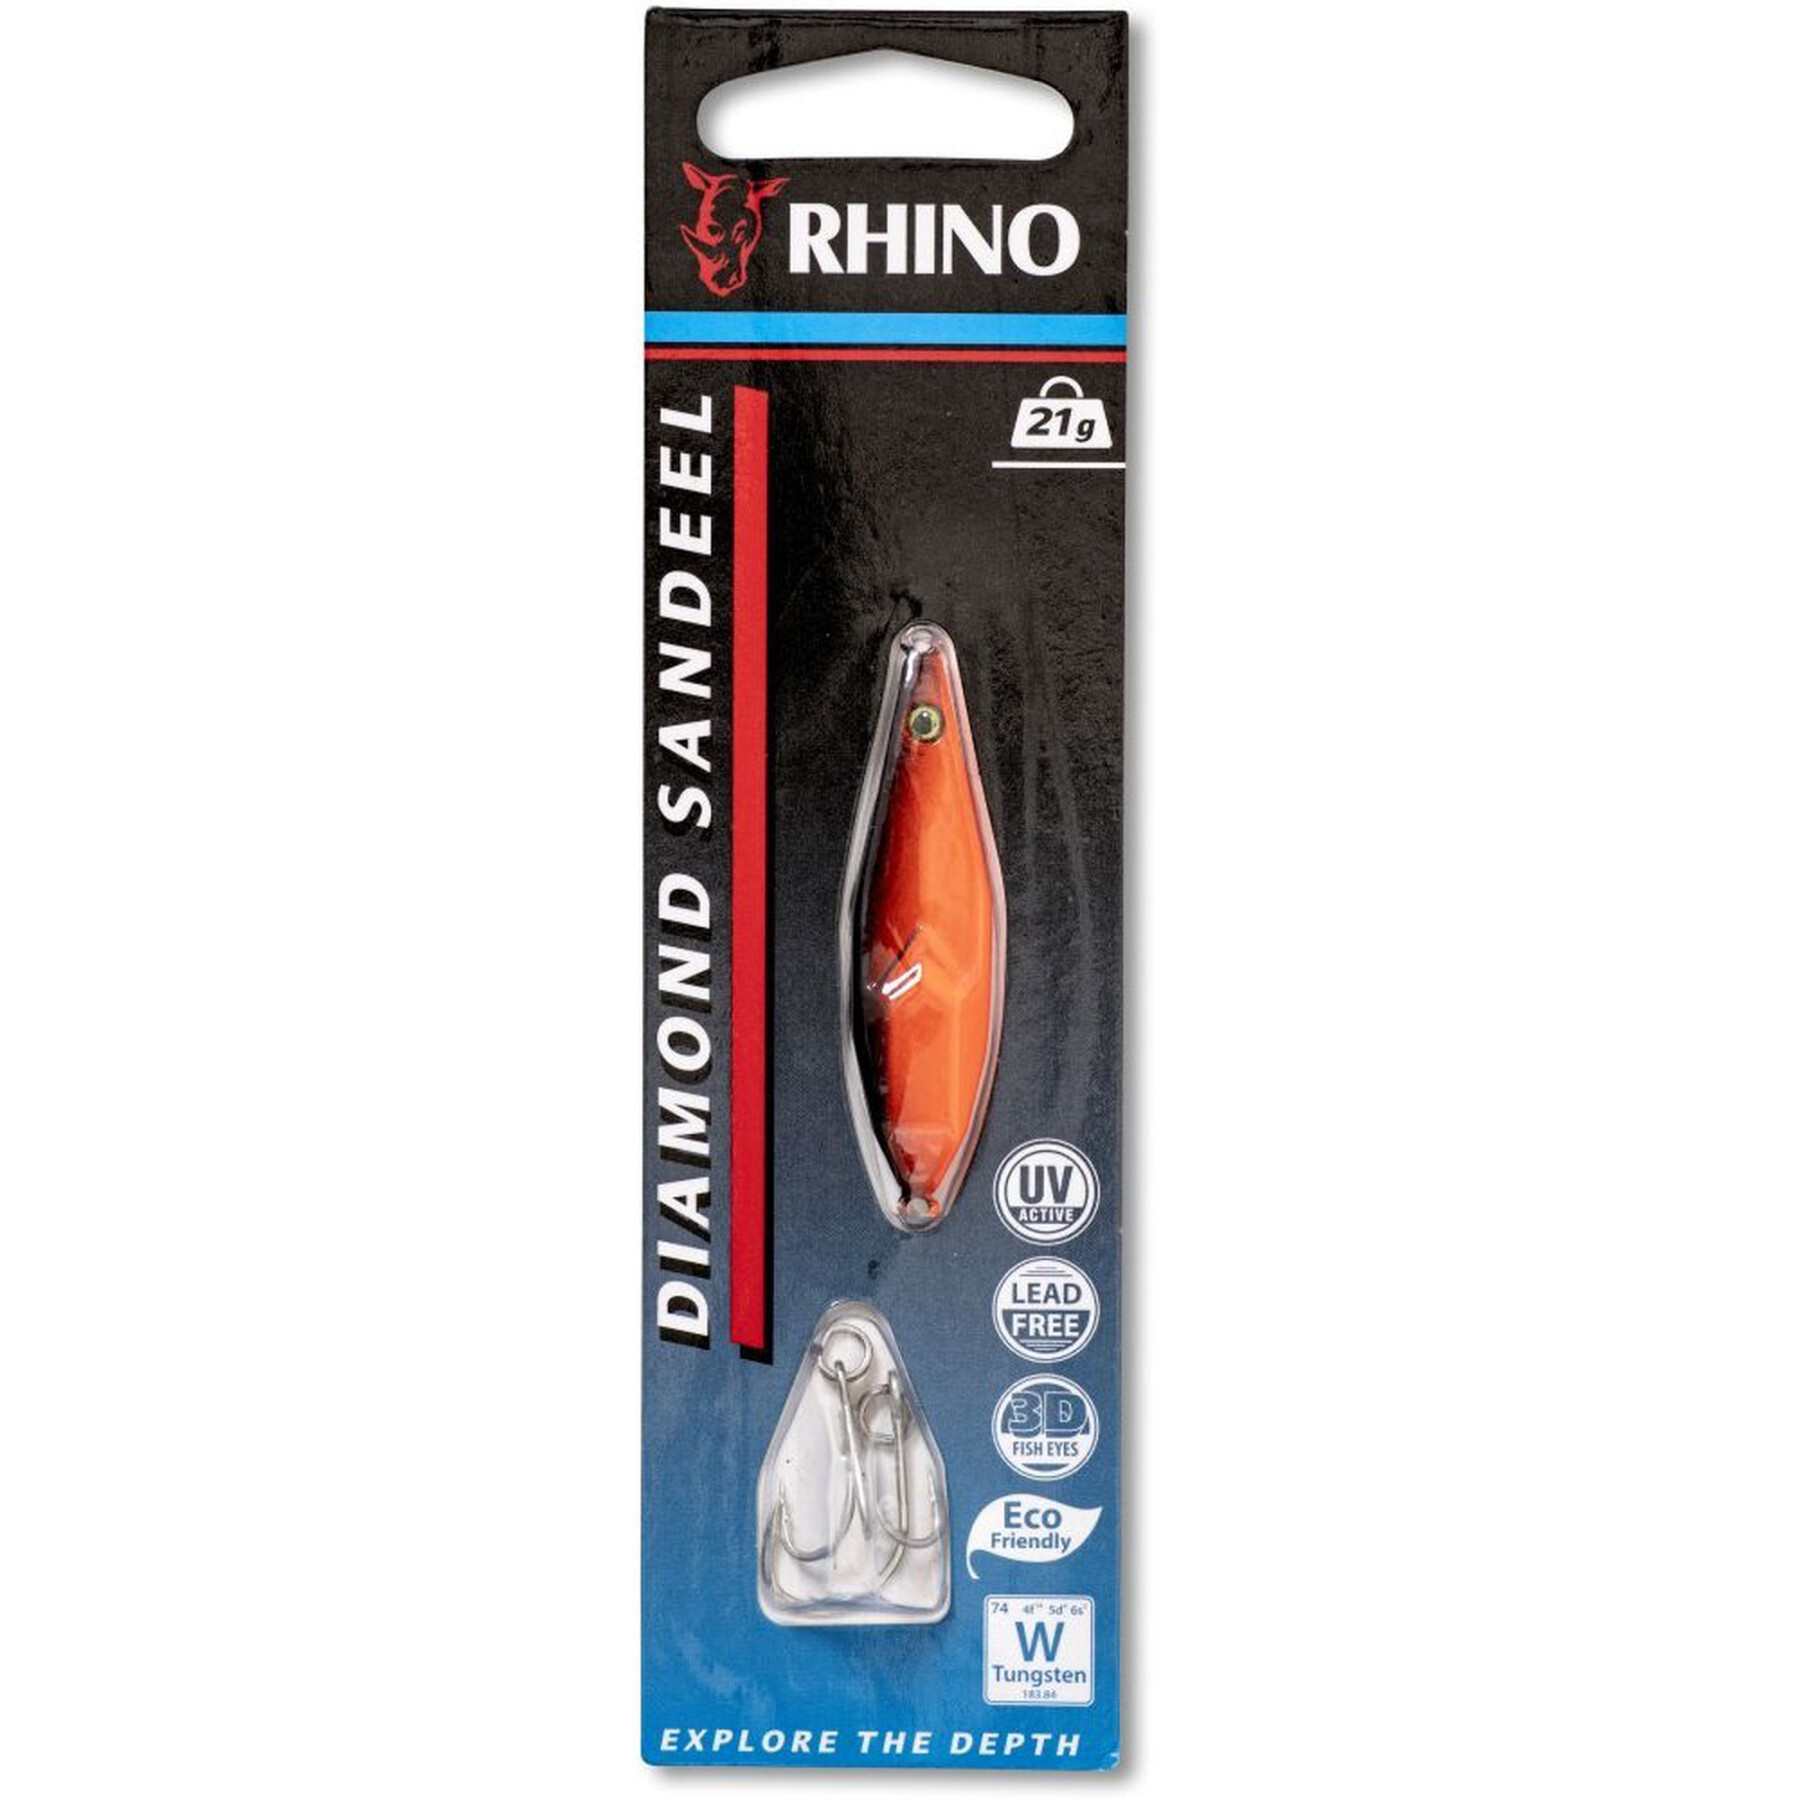 Köder Rhino Diamond Sandeel – 21g